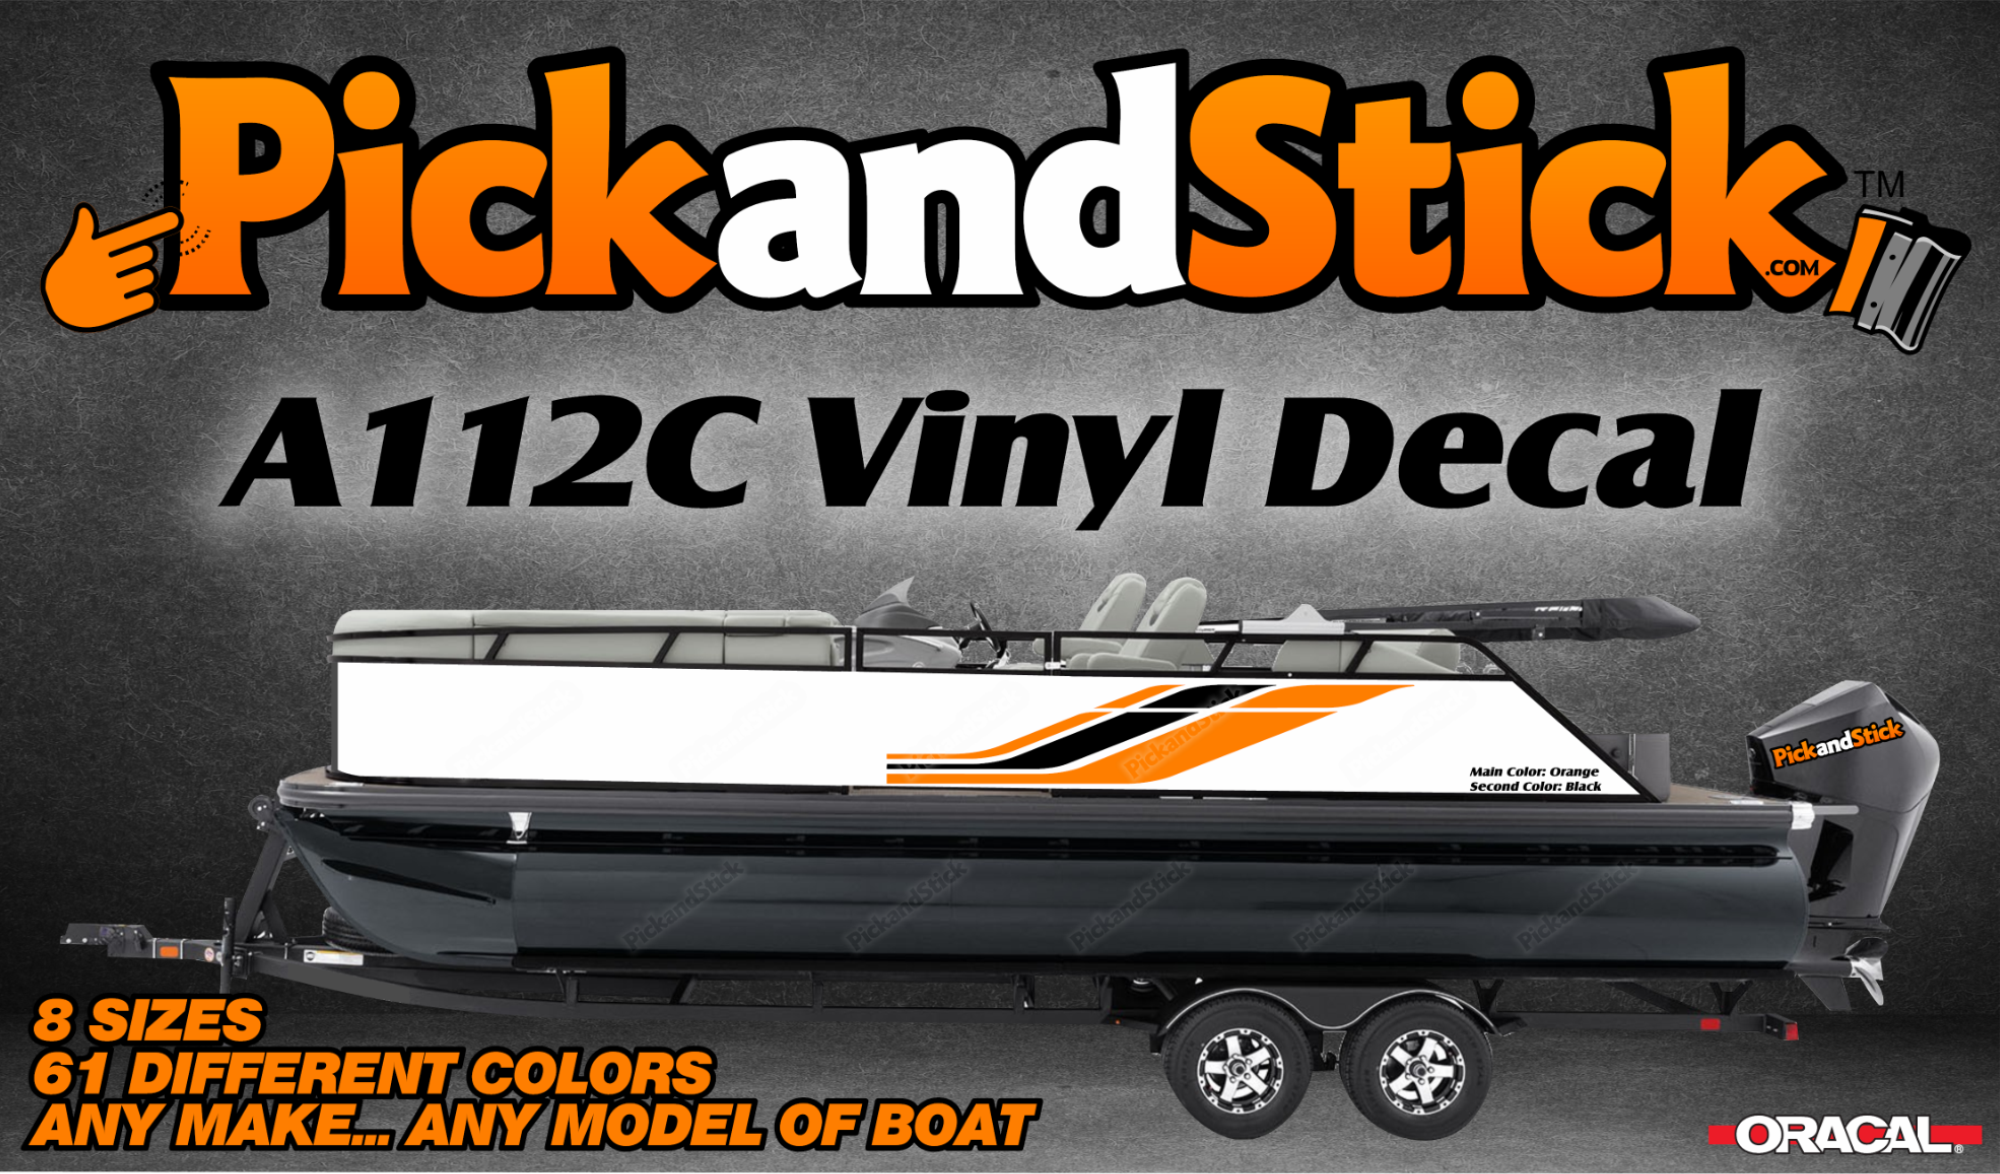 Boat Vinyl Decal A112C - PickandStickcom